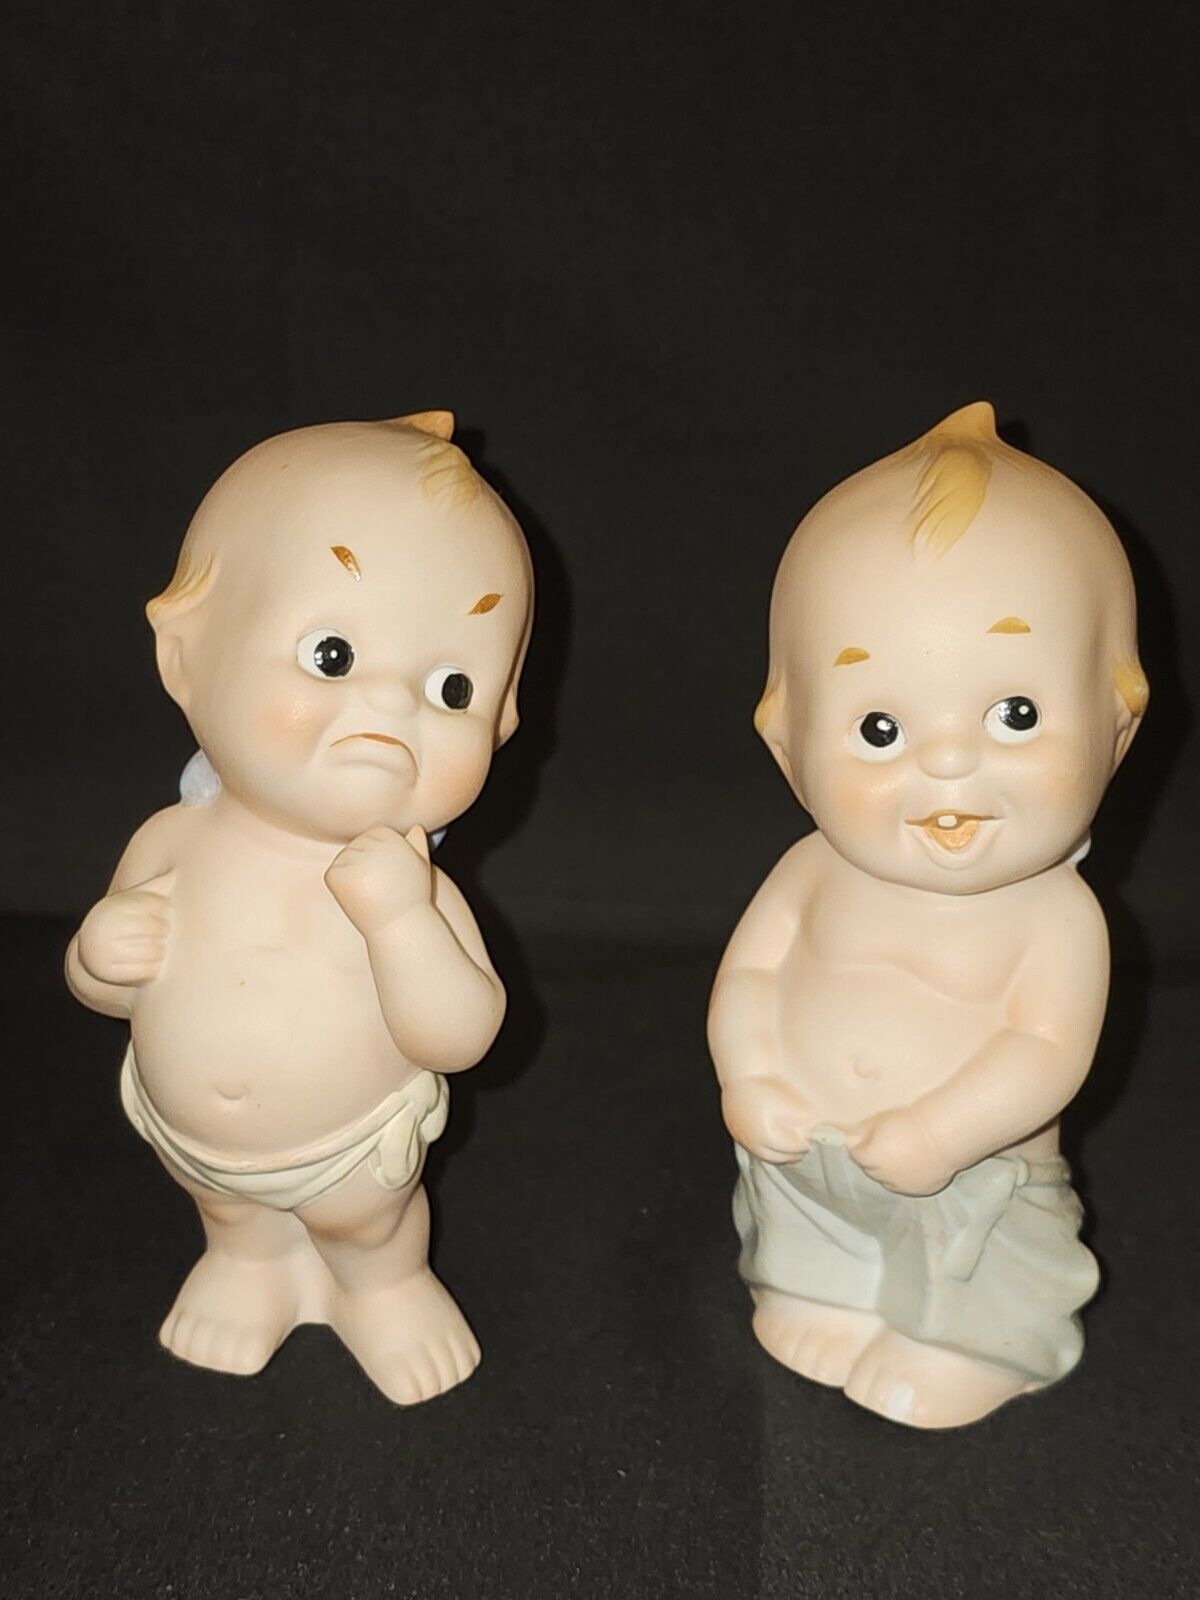 Vintage Napco Kewpie Doll Figurines